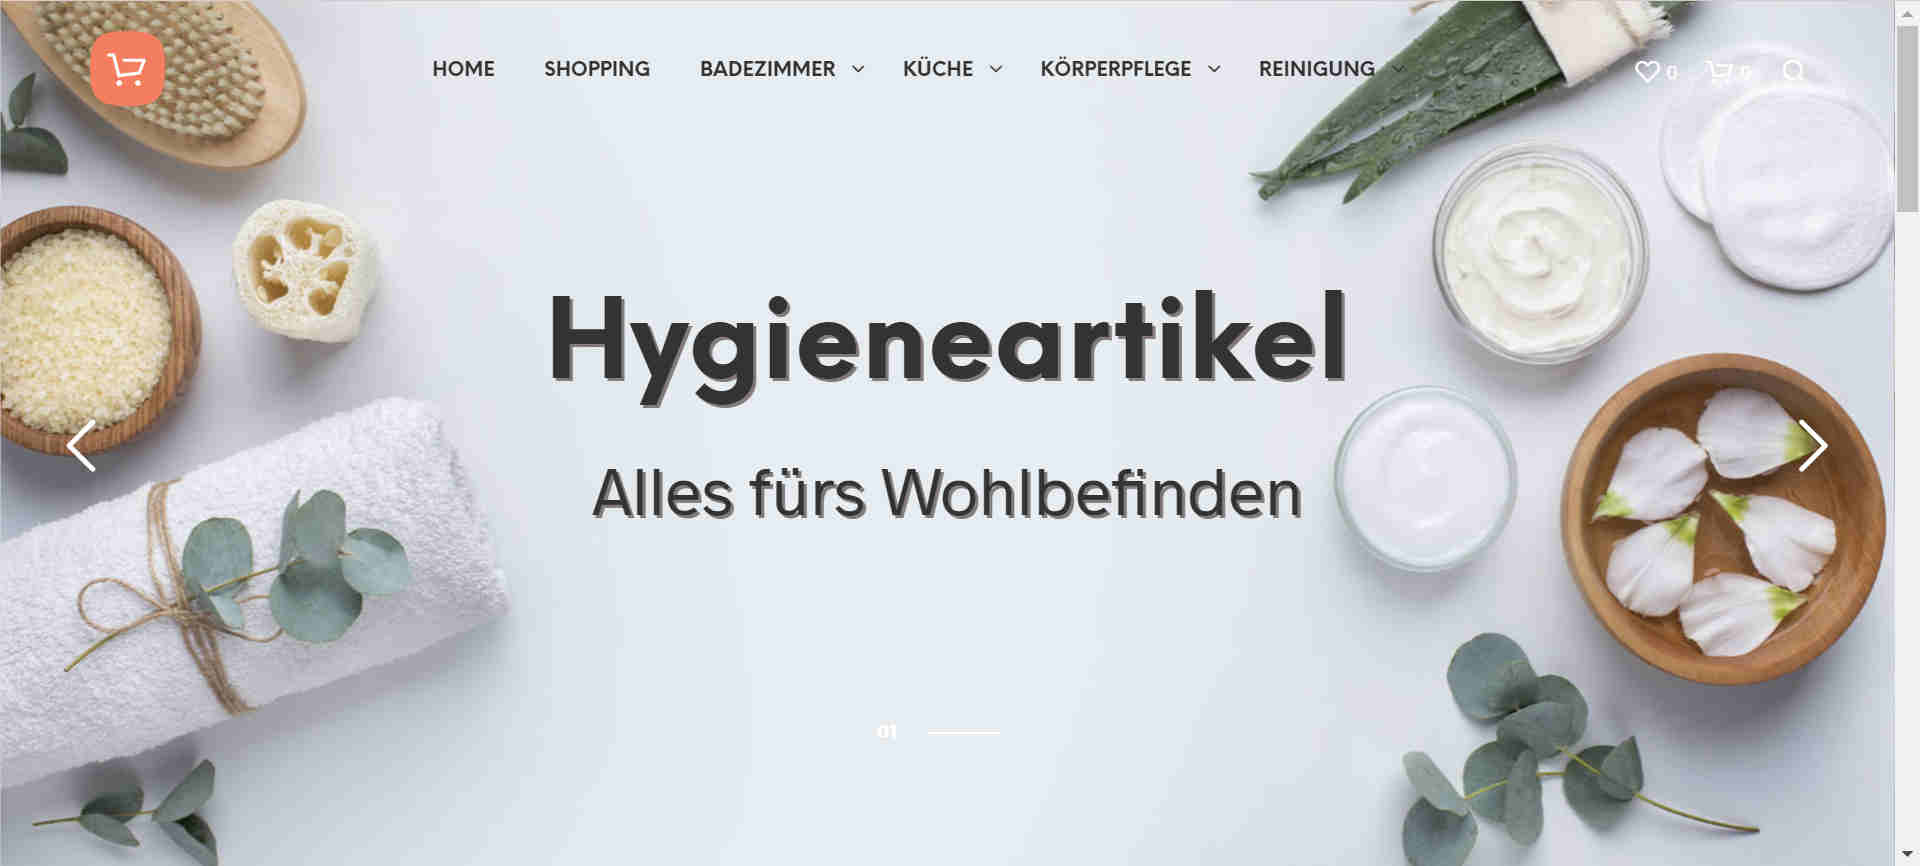 http://hygieneartikel.net